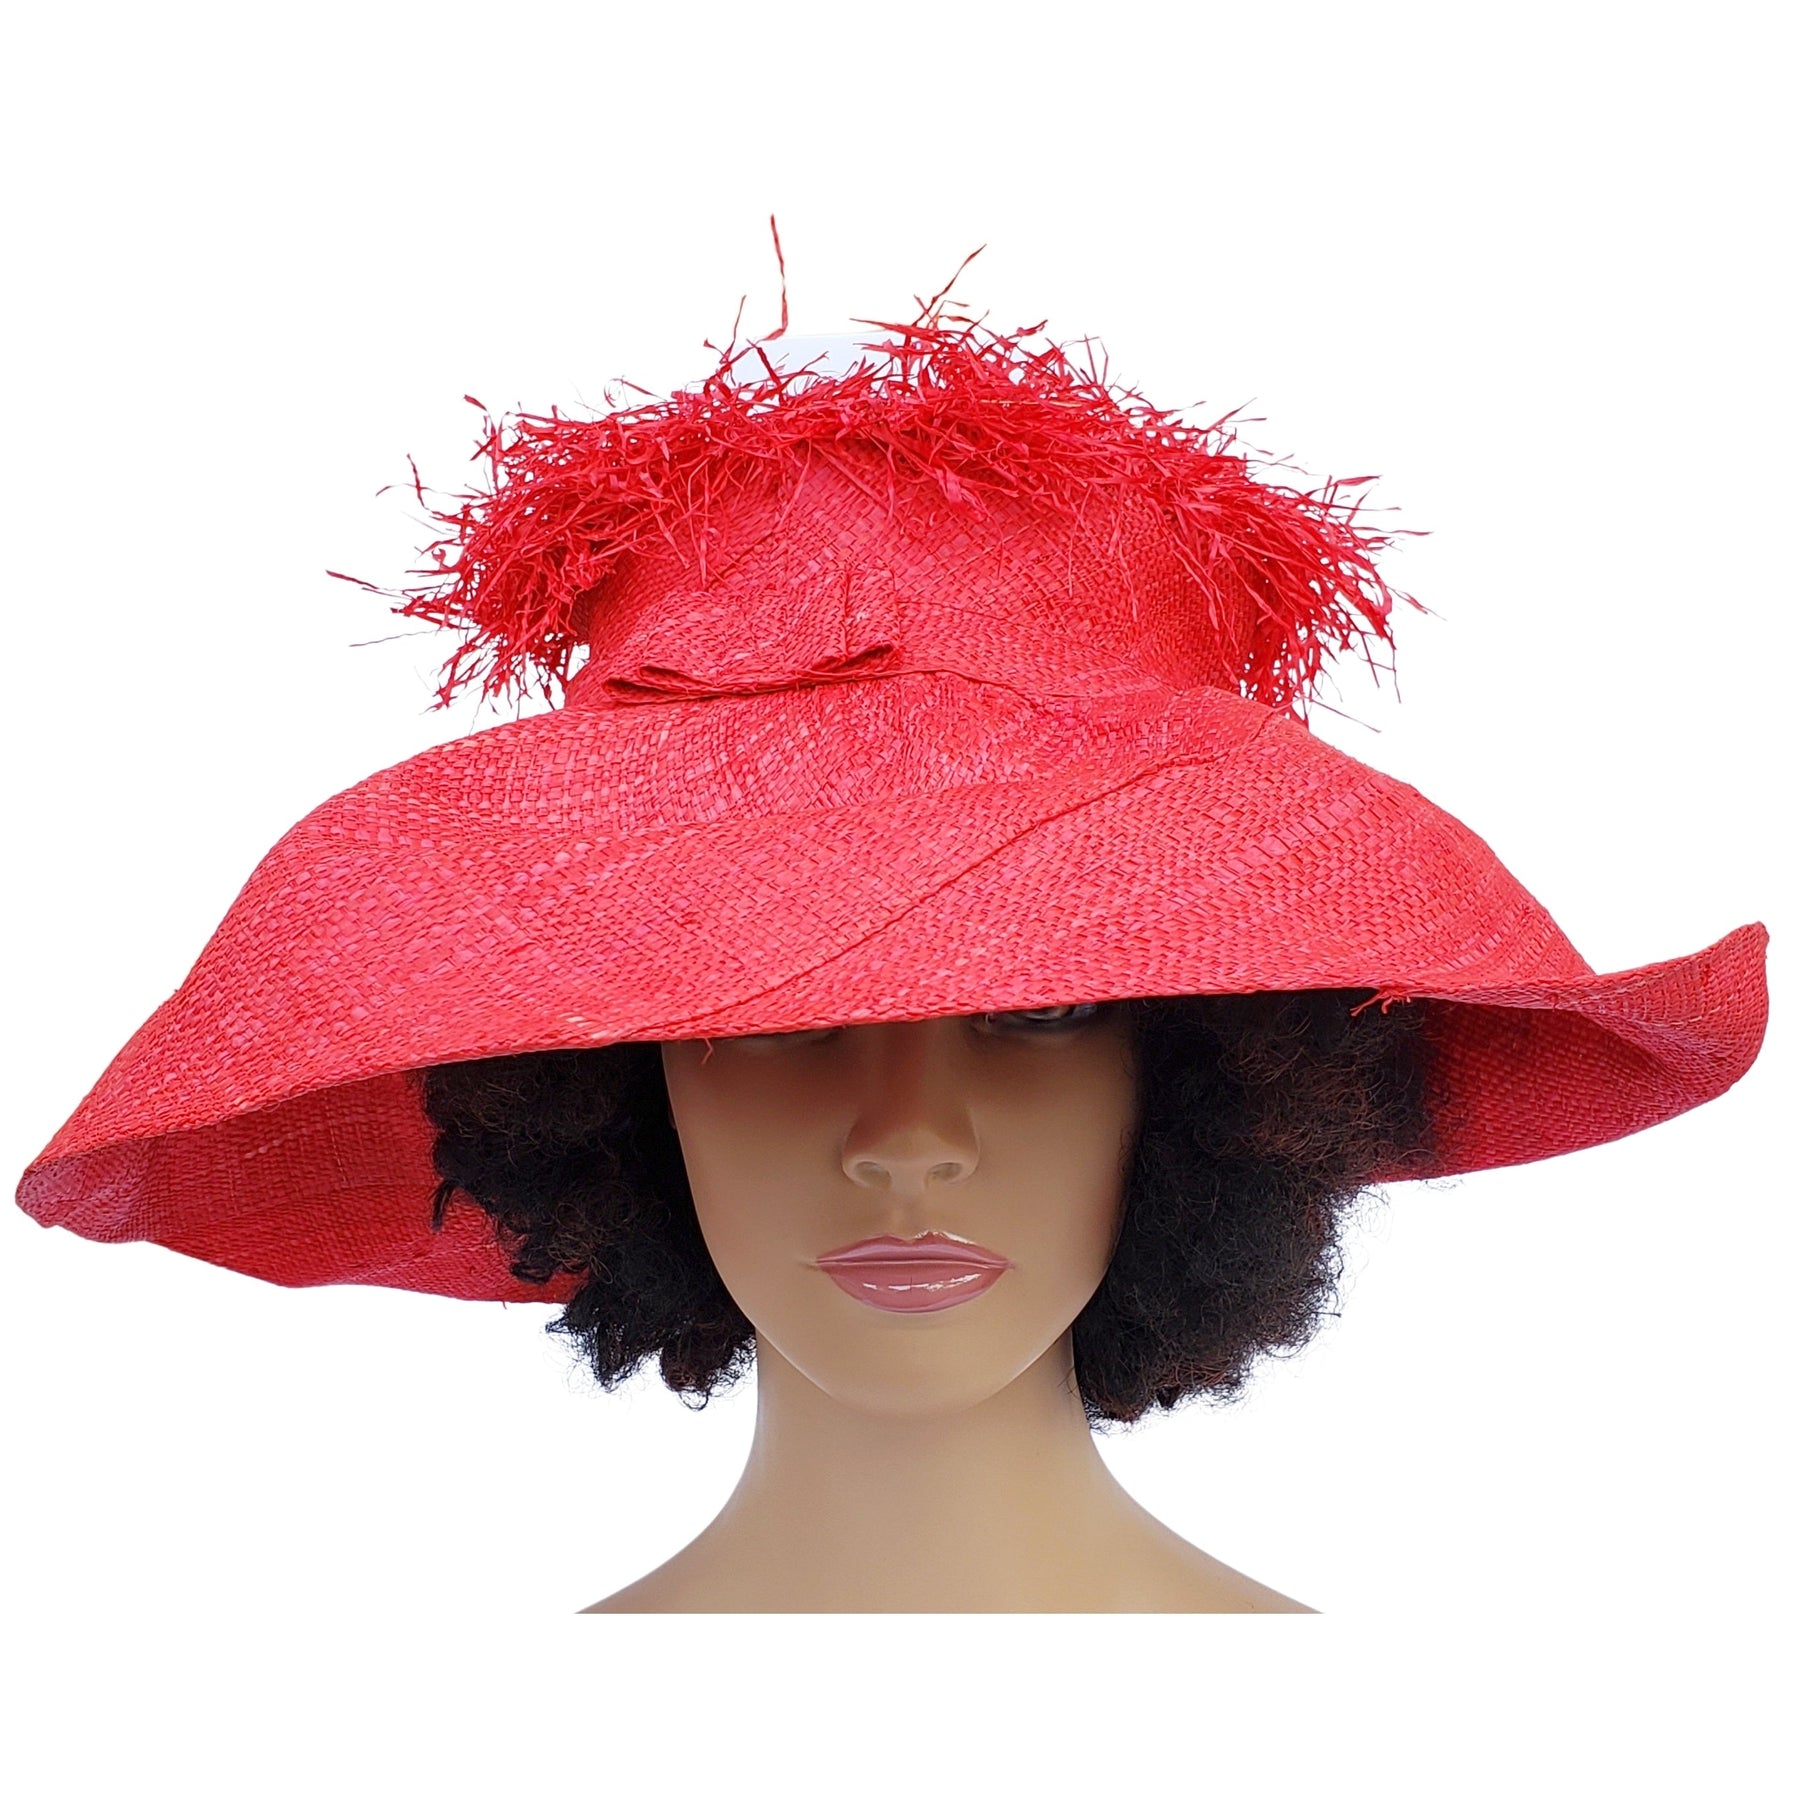 2 of 4: Nuru: Red Madagascar Big Brim Crown Out Raffia Sun Hat